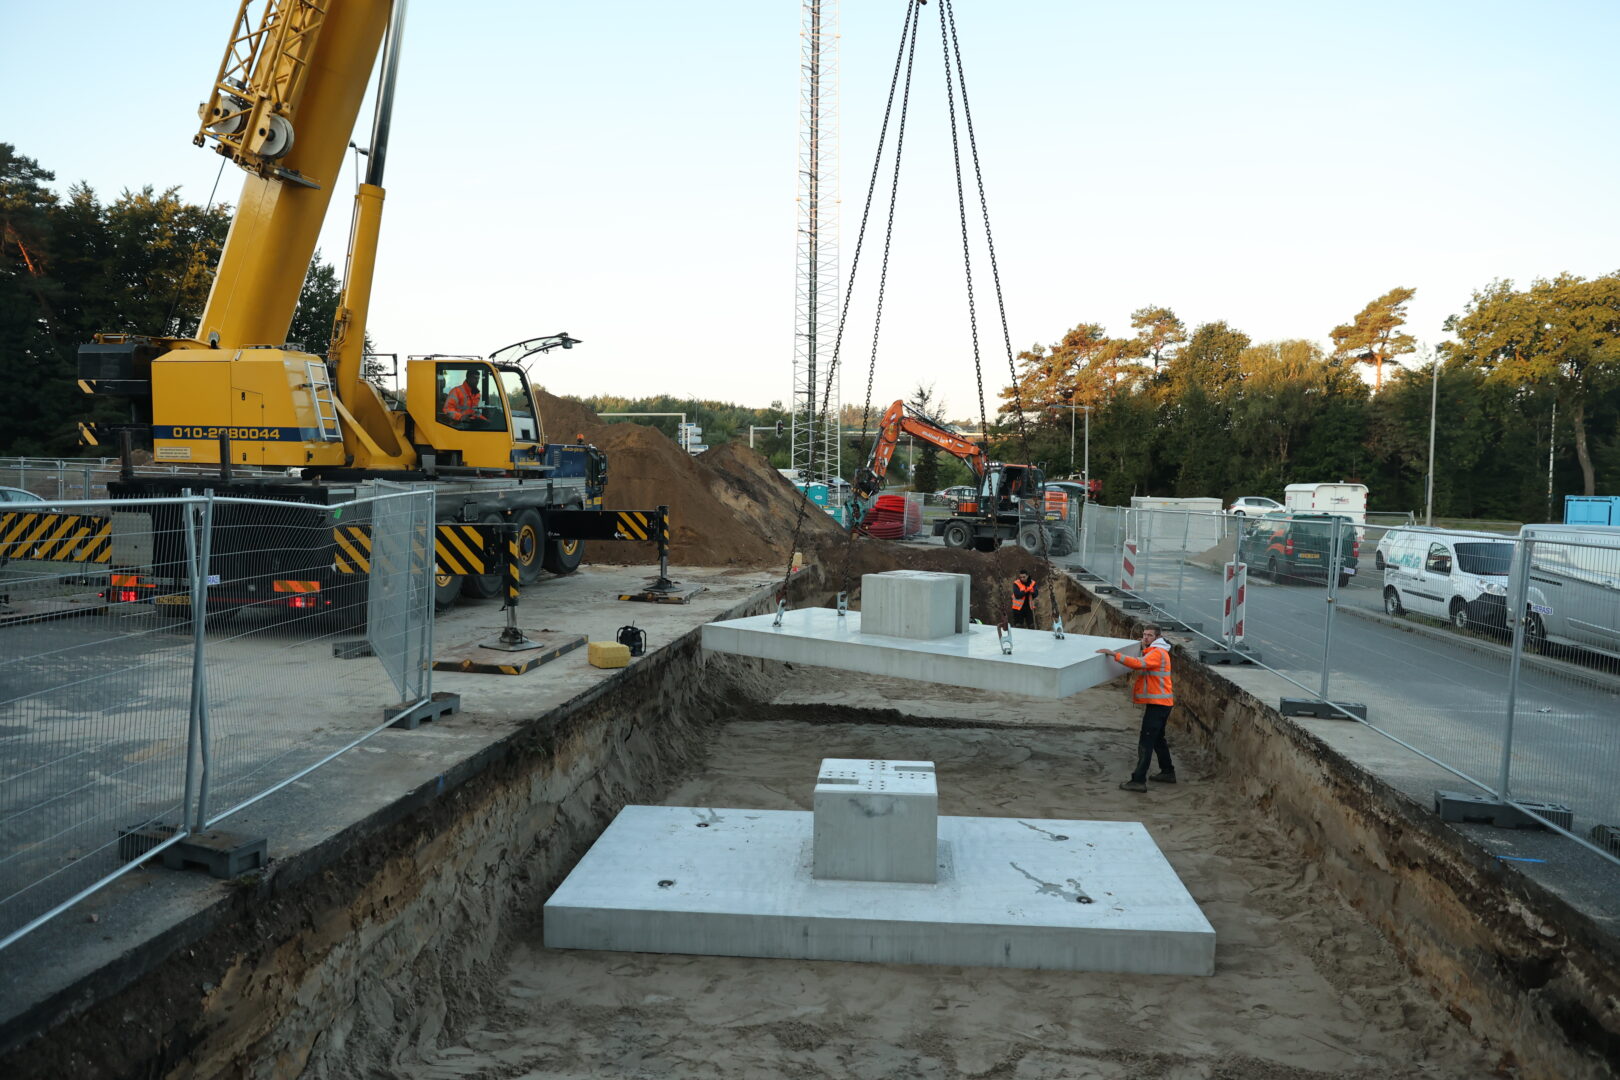 Bosch Beton is één van de huisleveranciers voor Europees snellaadbedrijf Fastned om prefab betonfundamenten te leveren voor snellaadpalen.